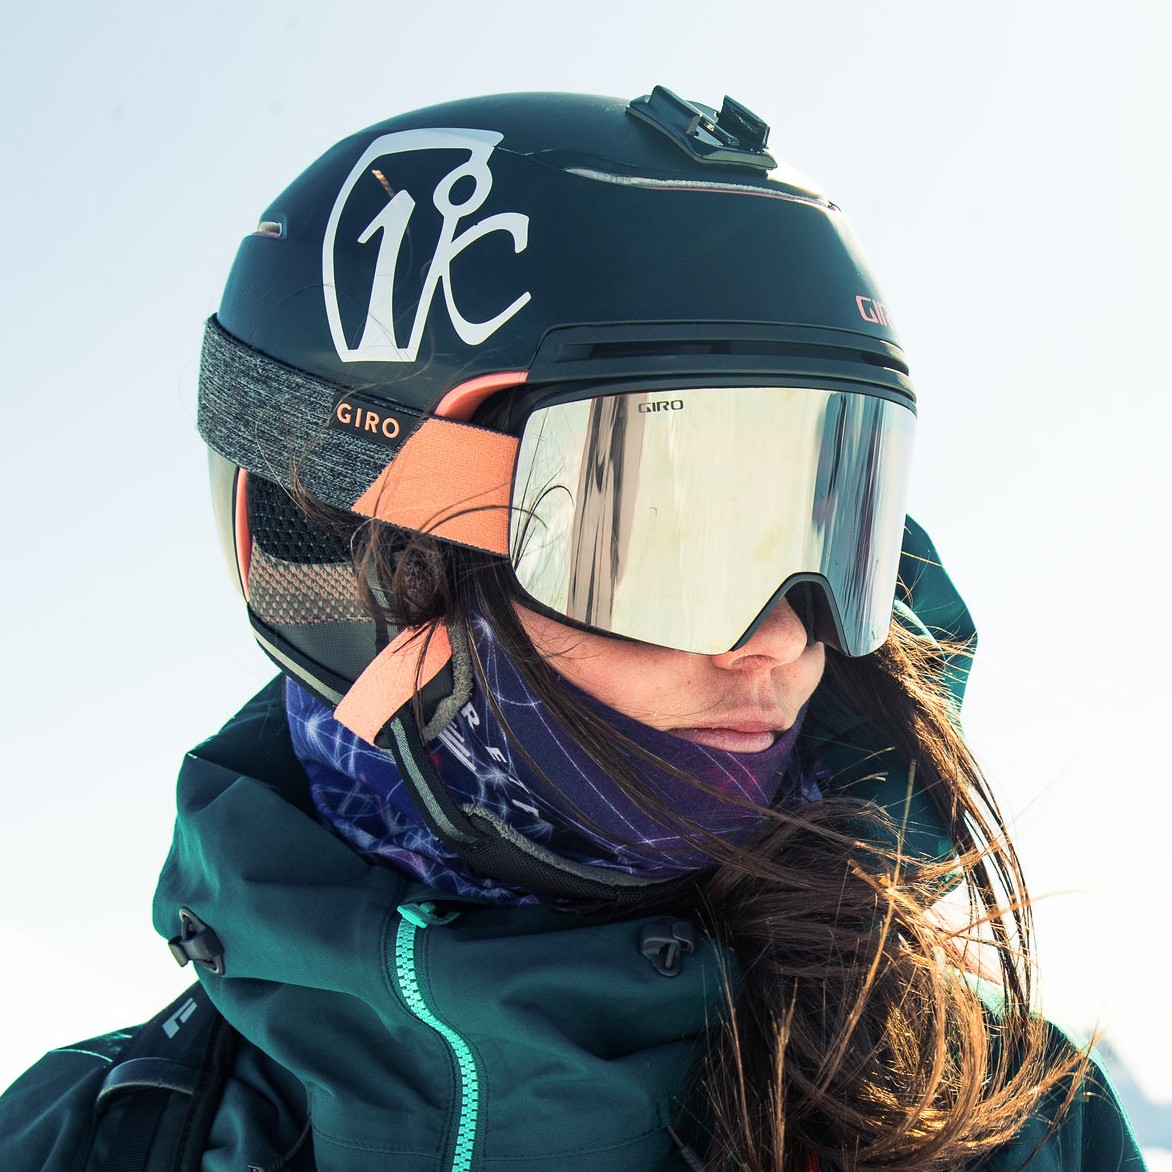 Giro Terra MIPS Women's Snowboard/Ski Helmet